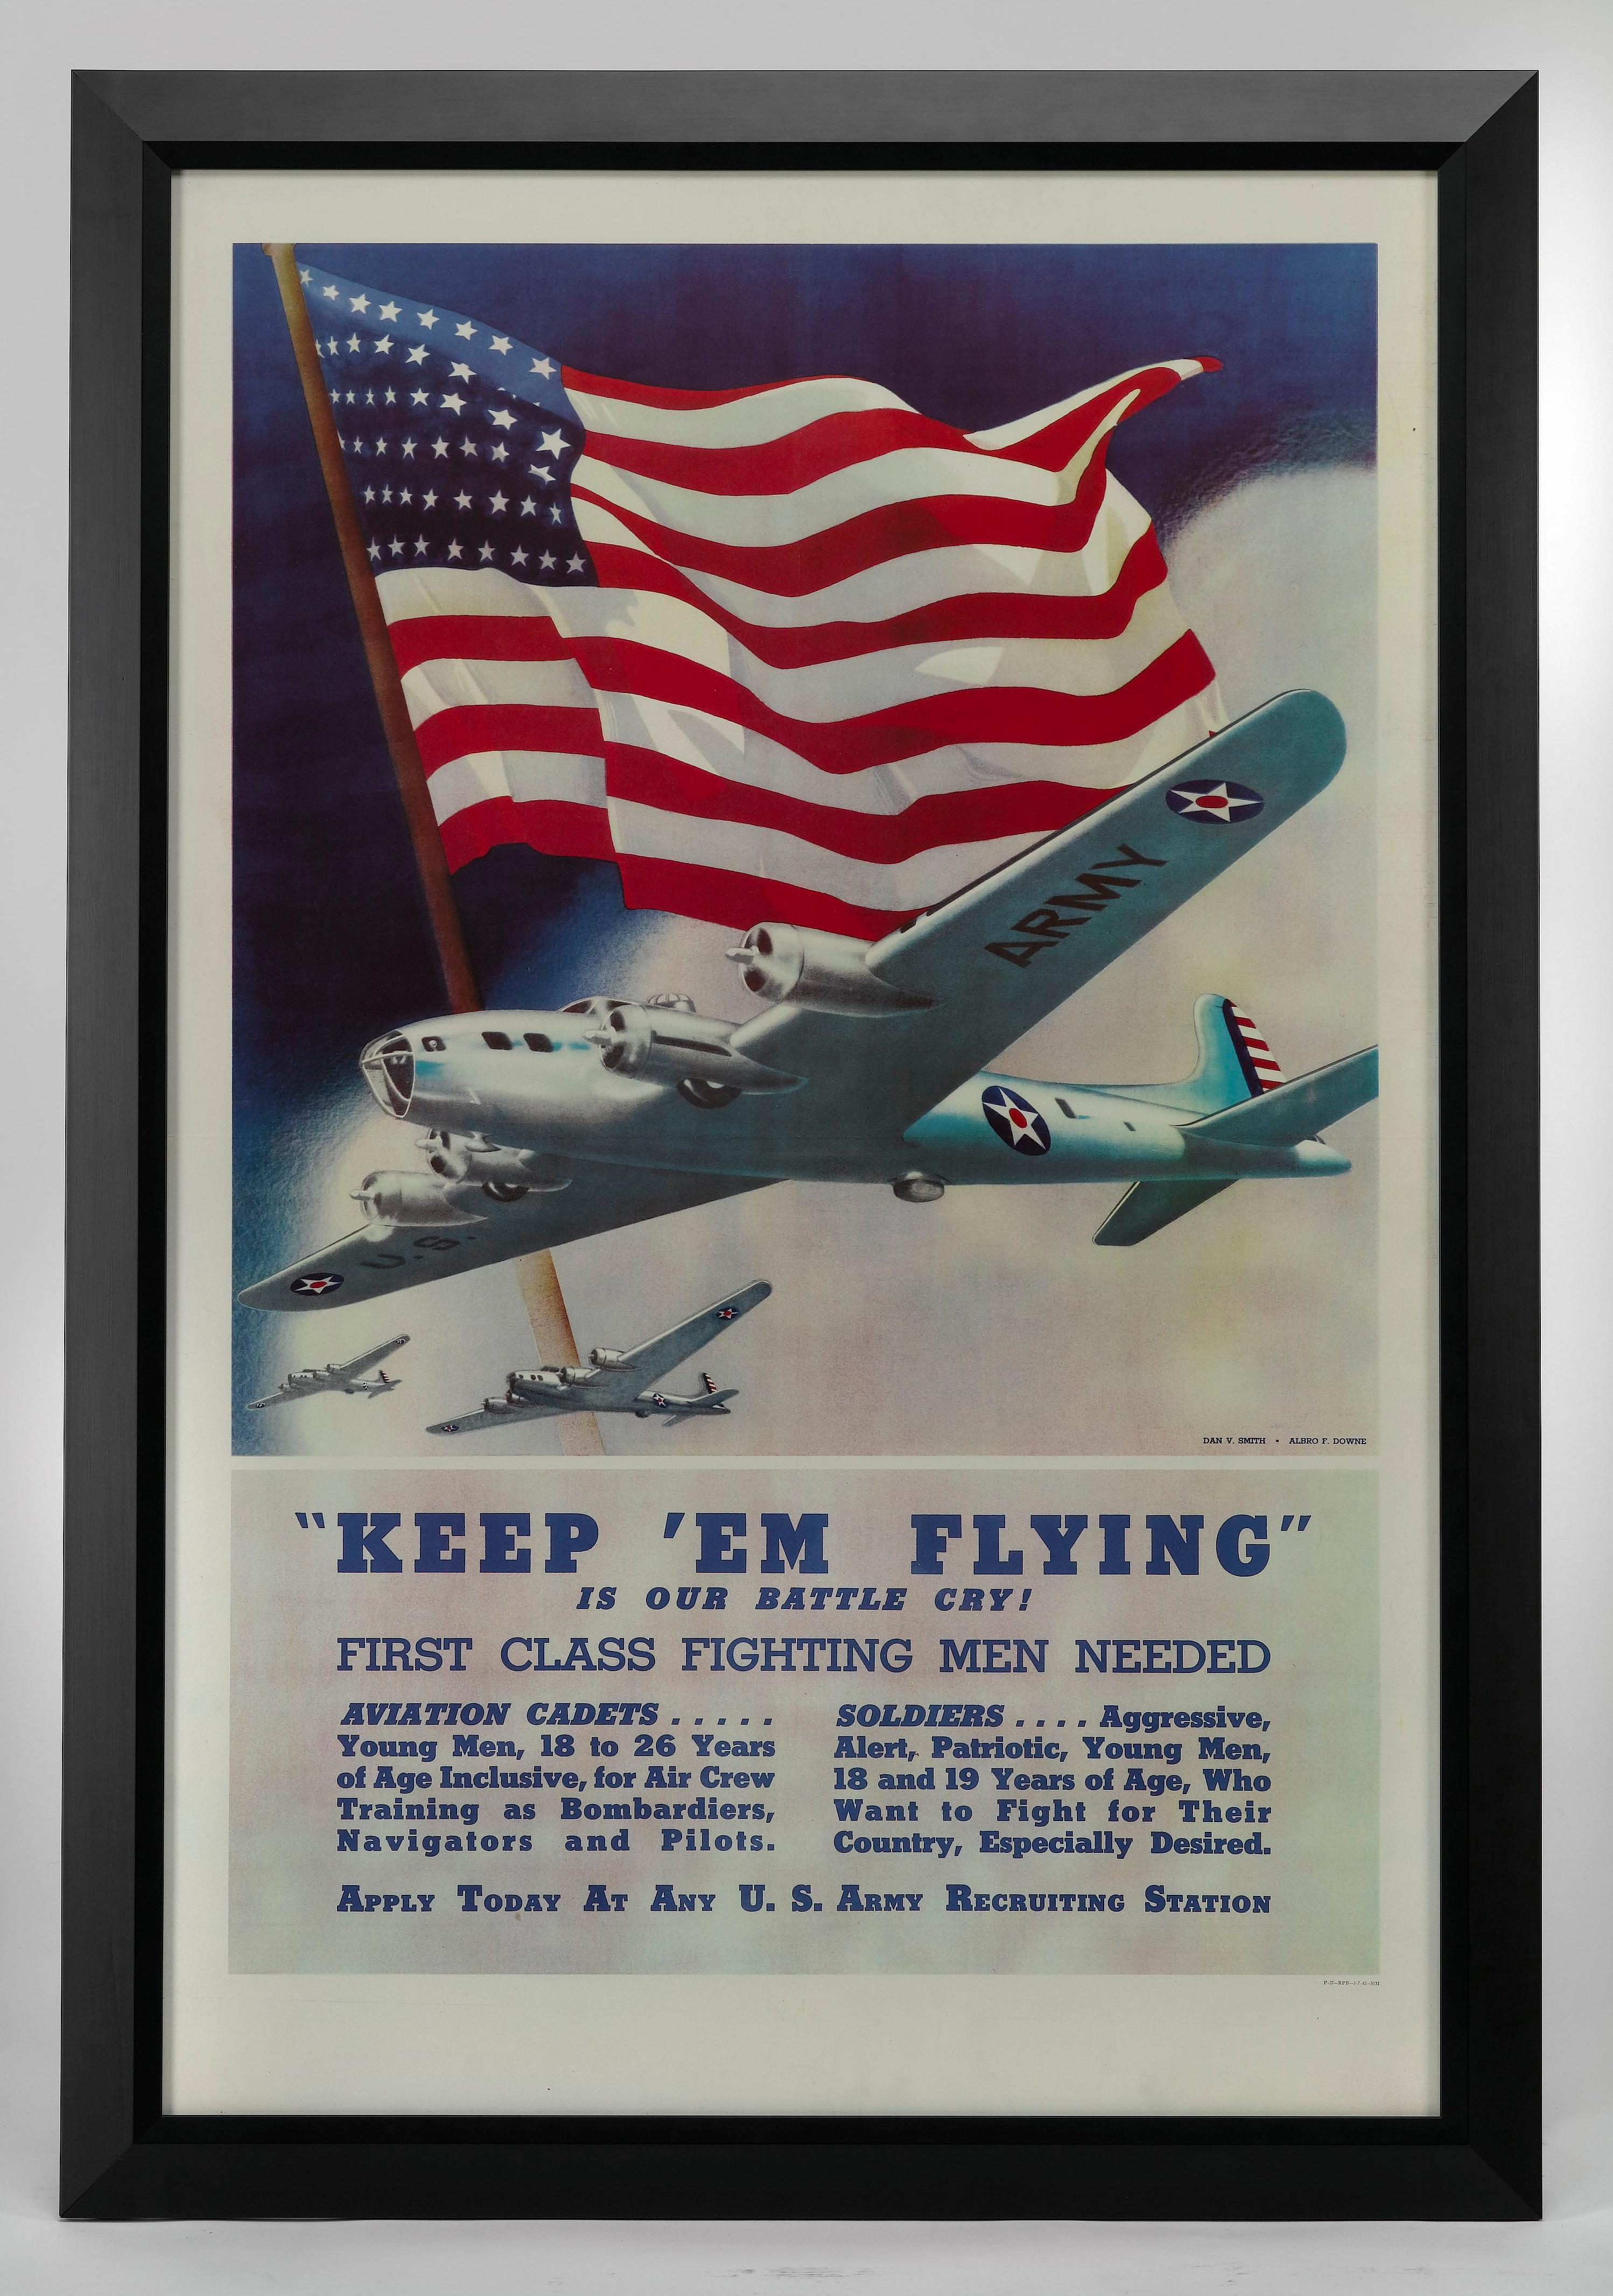 Cette affiche de recrutement de la Seconde Guerre mondiale a été réalisée par l'équipe d'artistes Dan V. Smith et Albrow F. I. Downe. L'affiche représente trois Boeing B-17 Flying Fortress devant un grand drapeau américain flottant. Cette affiche a